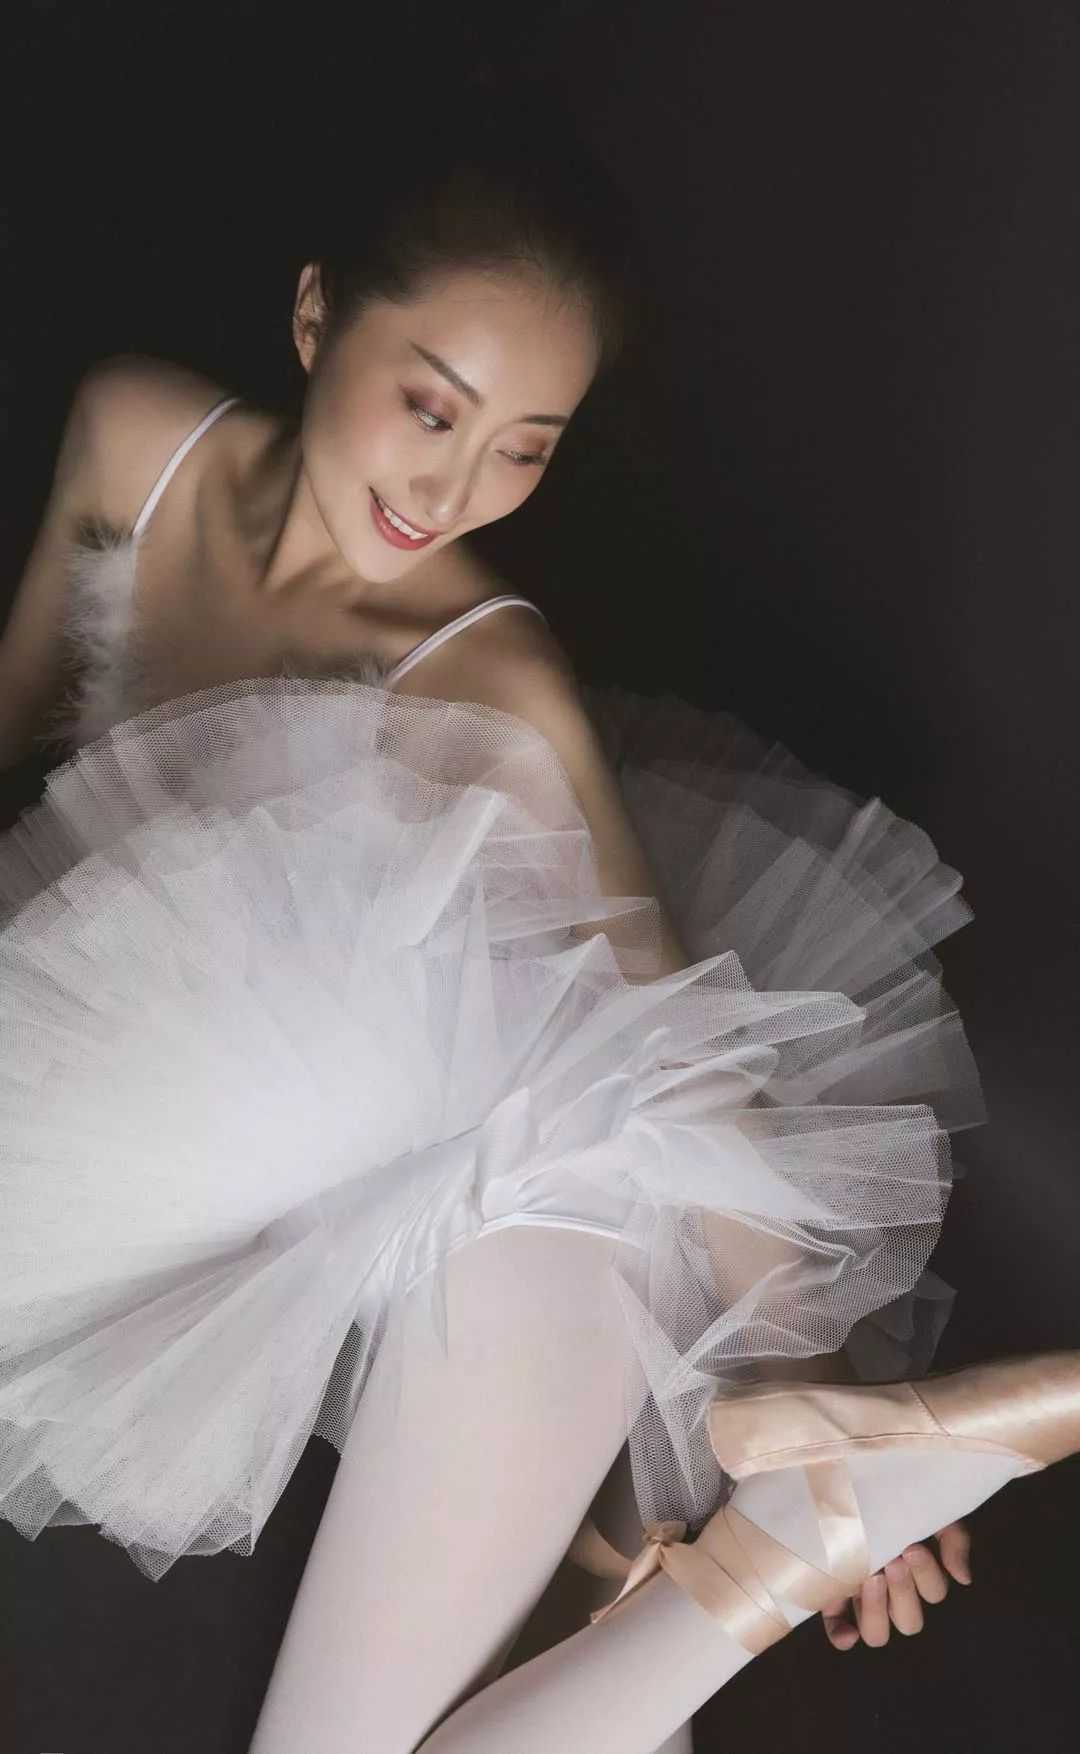 芭蕾舞女孩展示白色丝袜